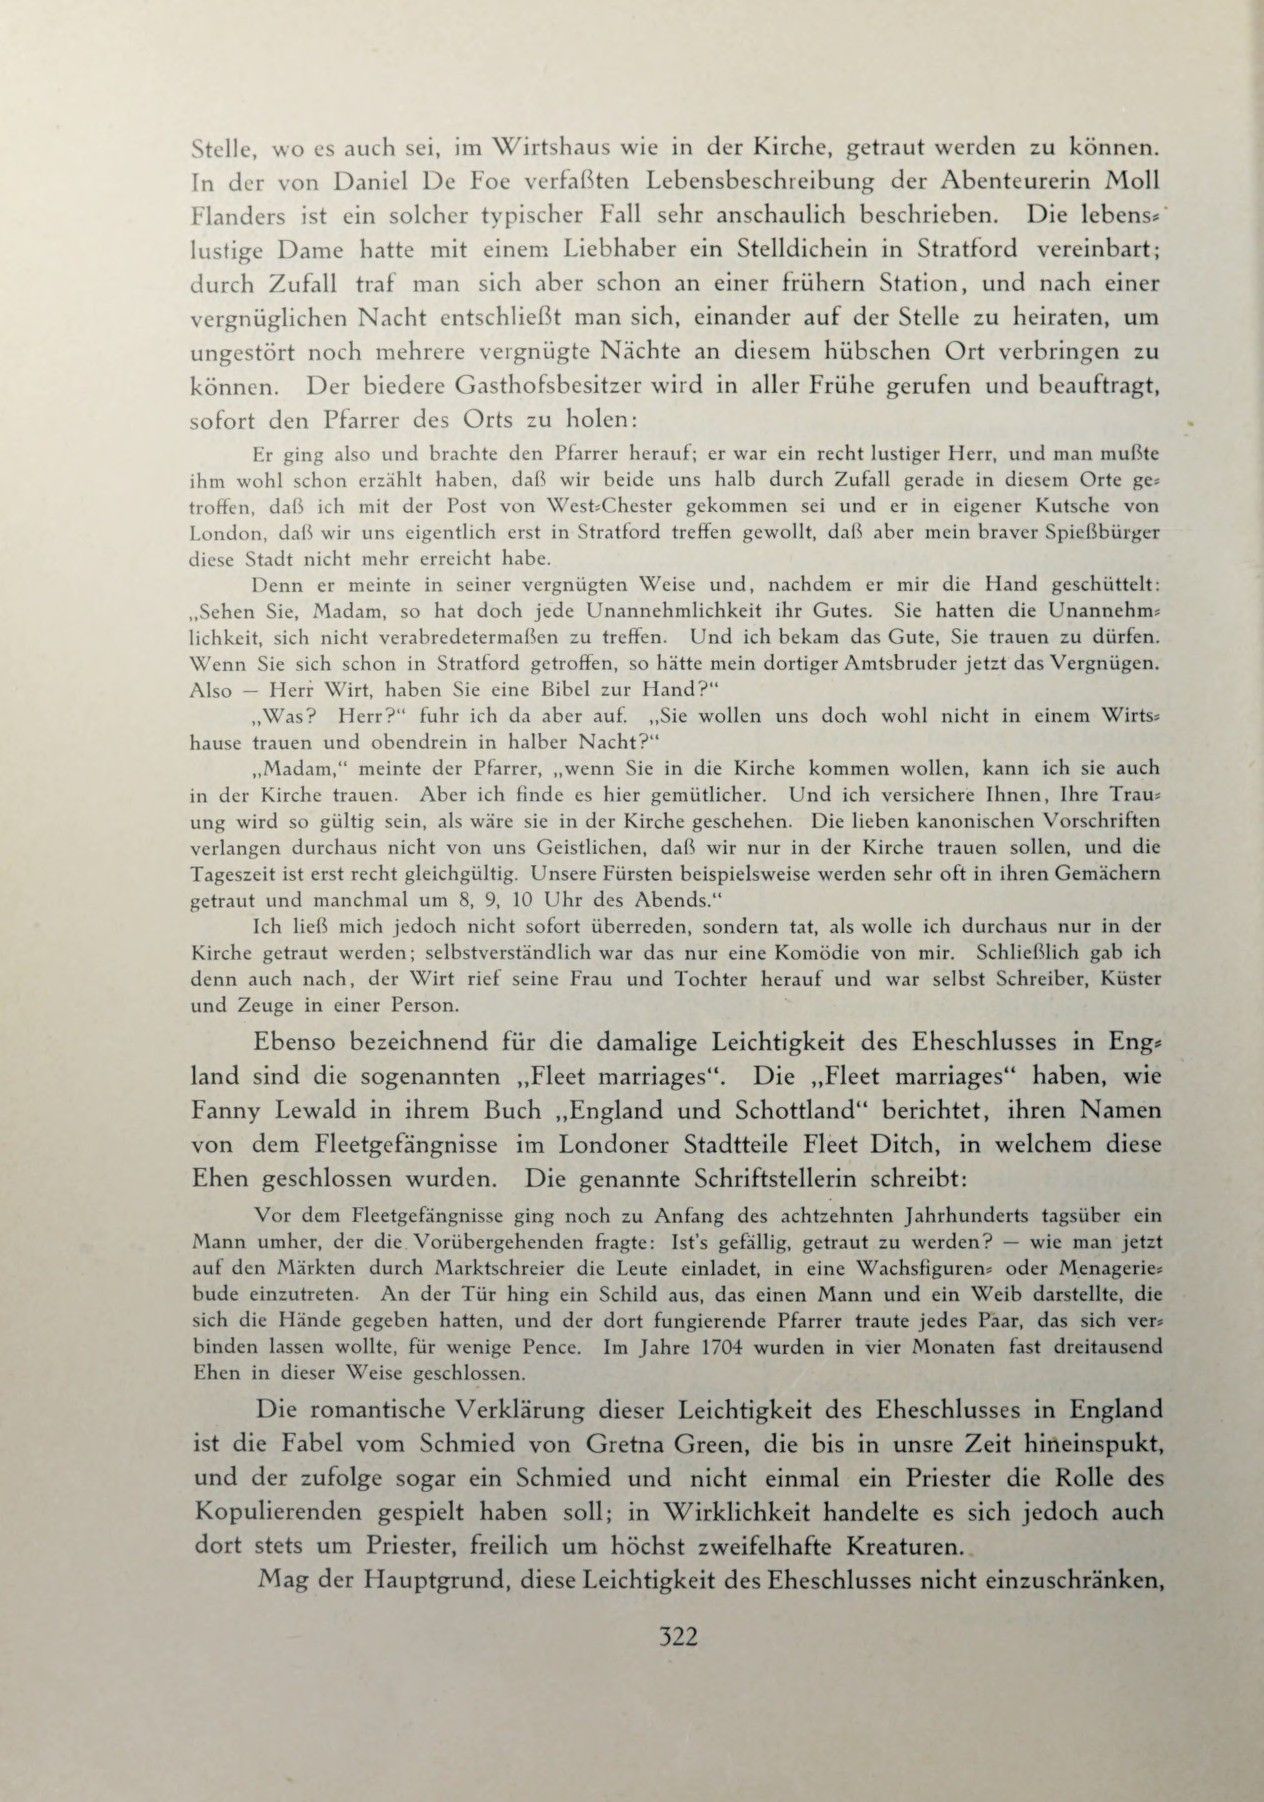 [Eduard Fuchs] Illustrierte Sittengeschichte vom Mittelalter bis zur Gegenwart: Bd. 2. and Ergänzungsband. Die galante Zeit [German] 469